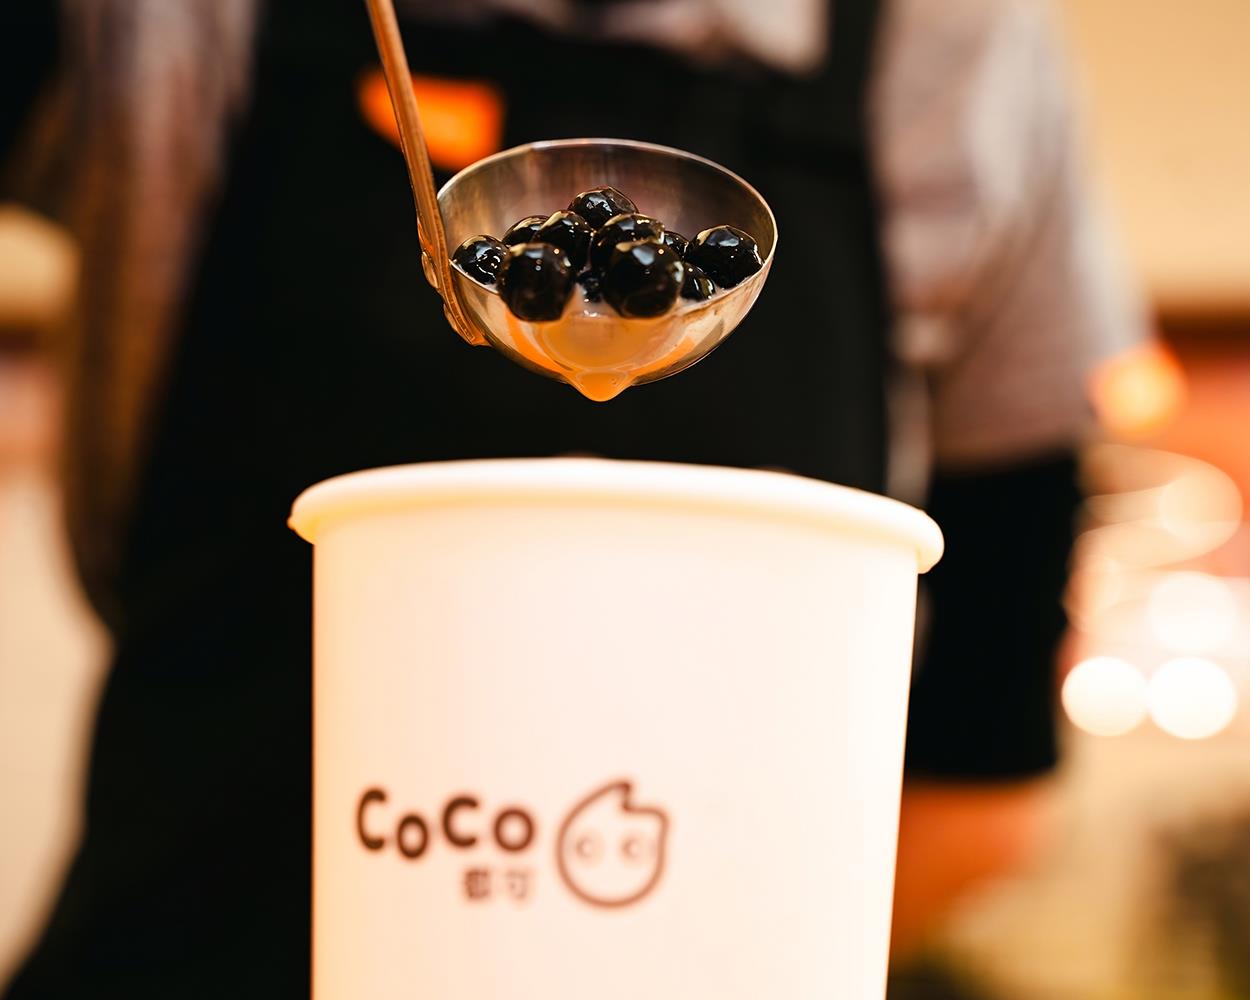 Trà sữa Coco: Sức hấp dẫn từ hương vị trà sữa khơi gợi cá tính - Ảnh 2.